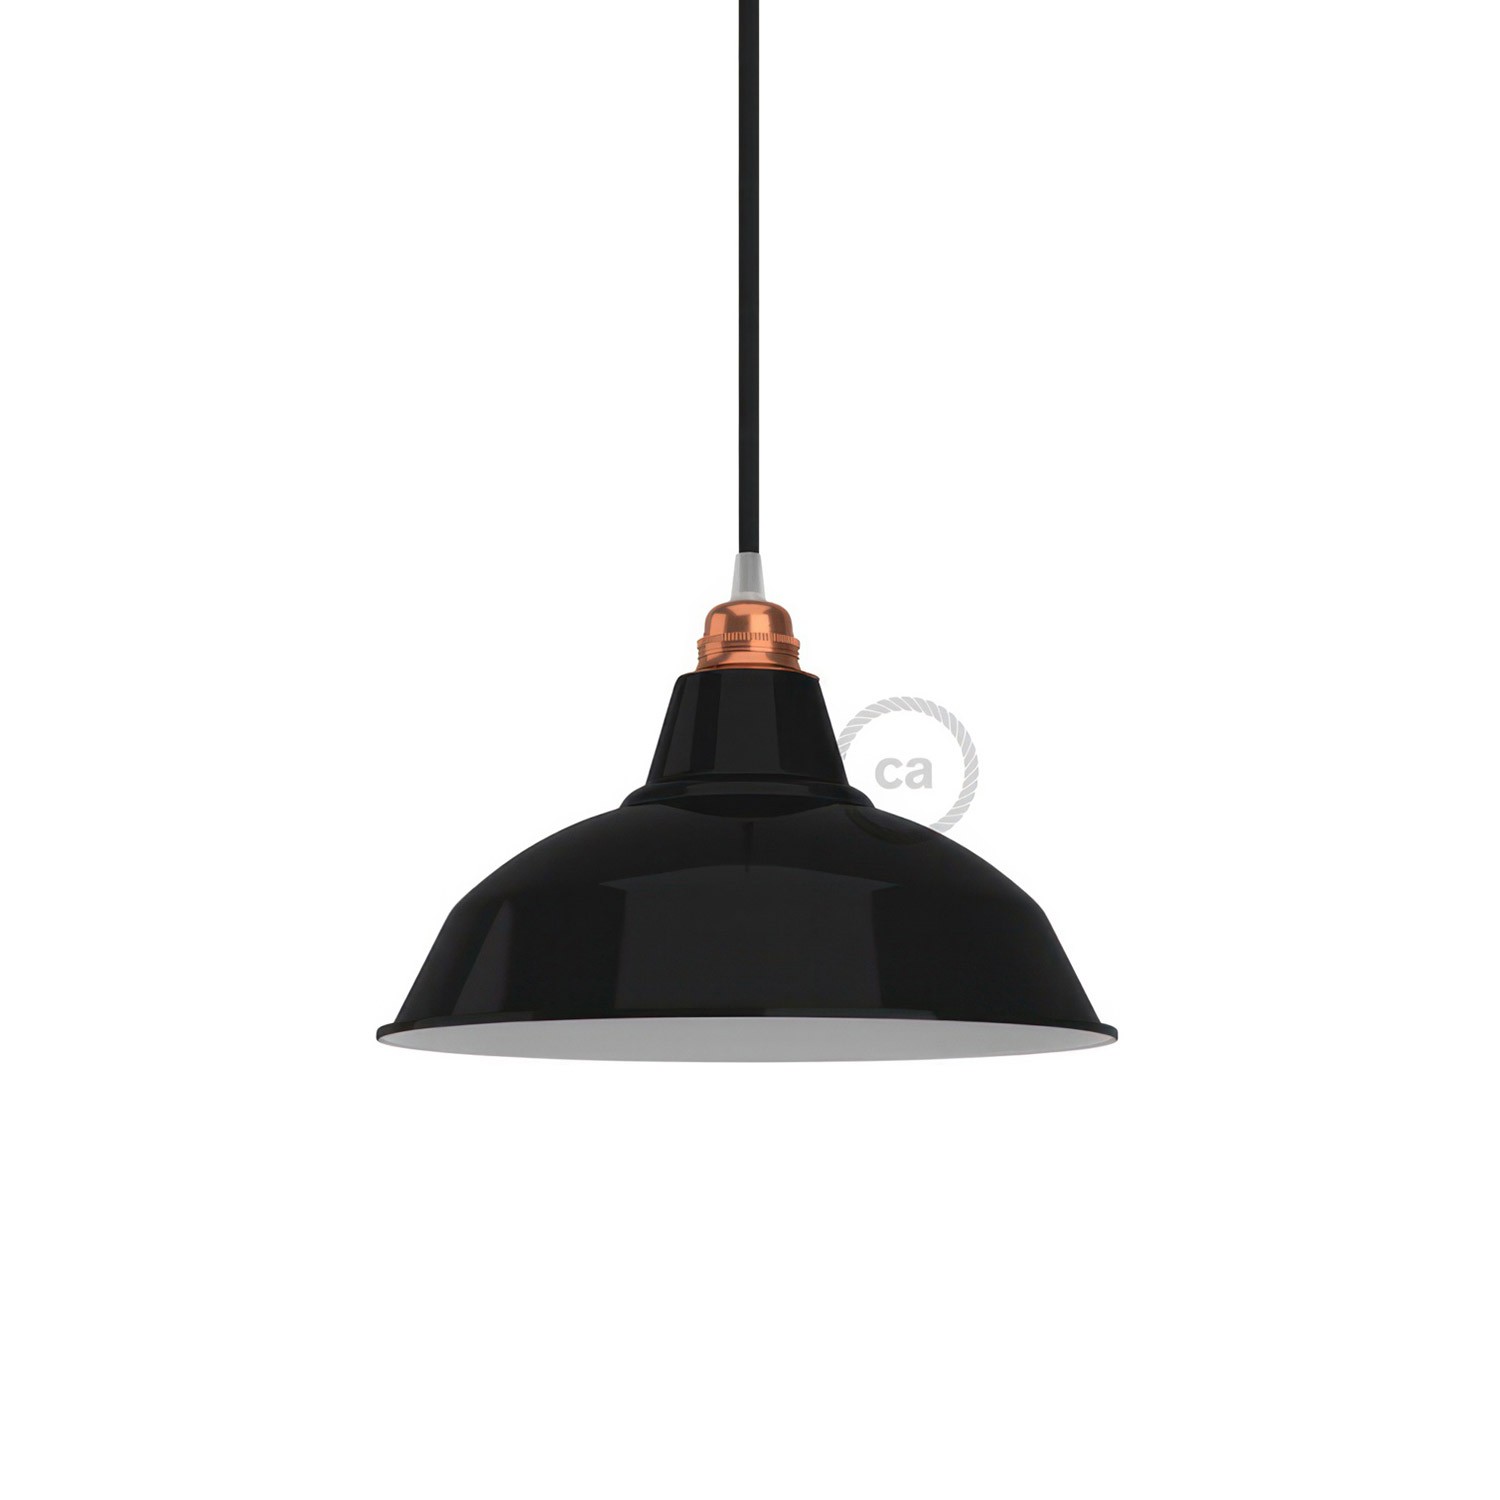 Lampenschirm Bistrot aus lackiertem Metall mit E27-Fassung, 30 cm Durchmesser